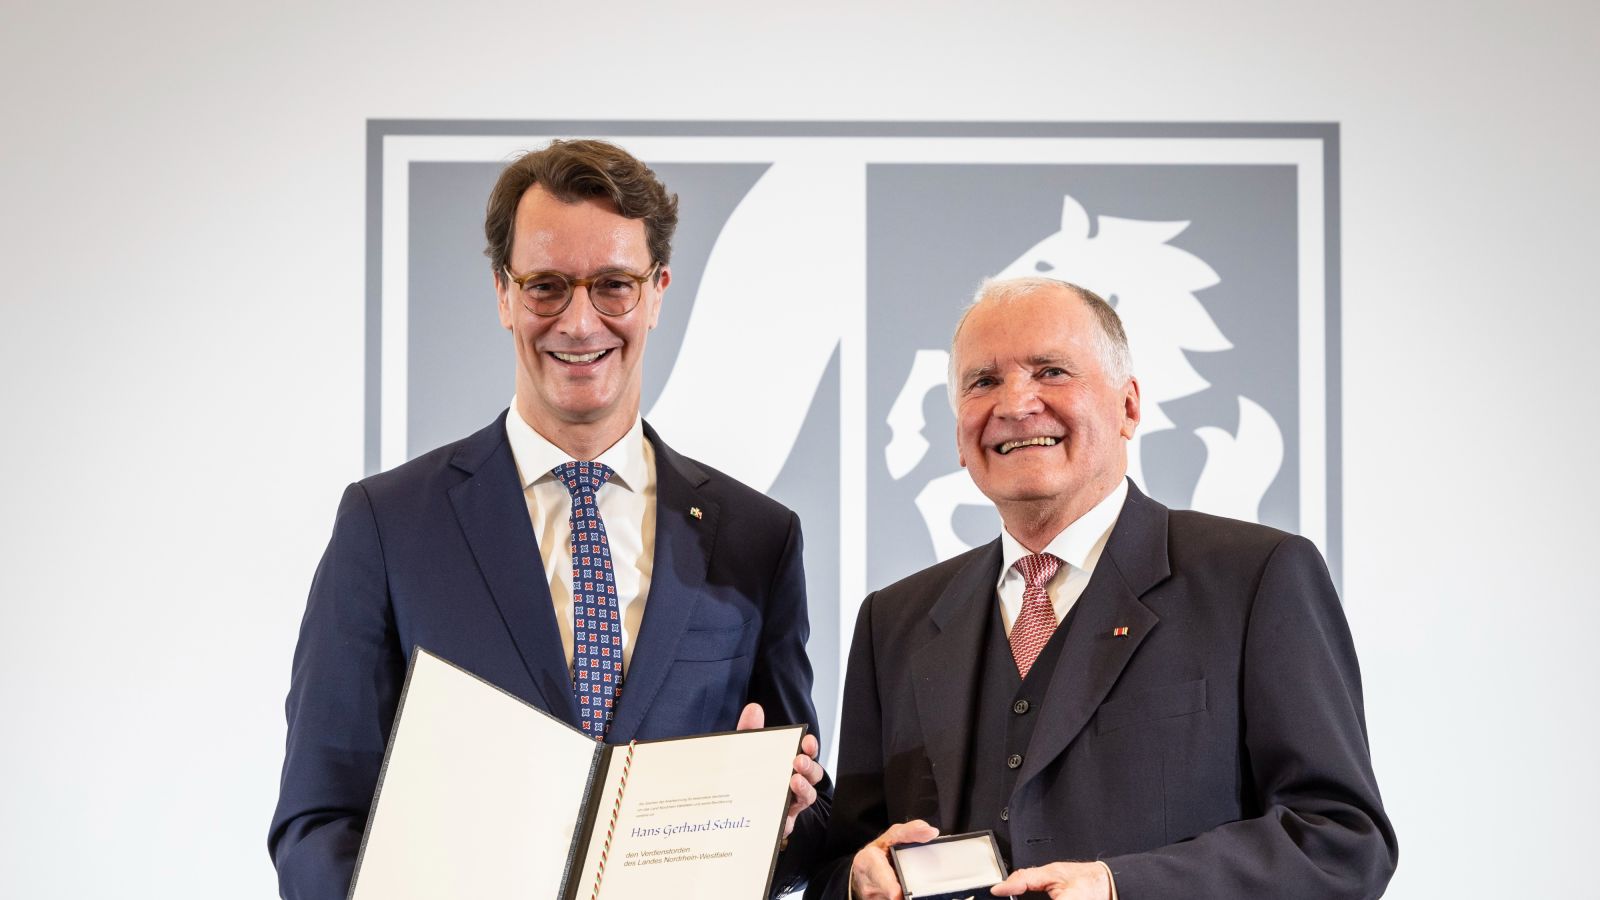 Verleihung des Landesverdienstordens an Hans Gerhard Schulz durch Ministerpräsident Hendrik Wüst.